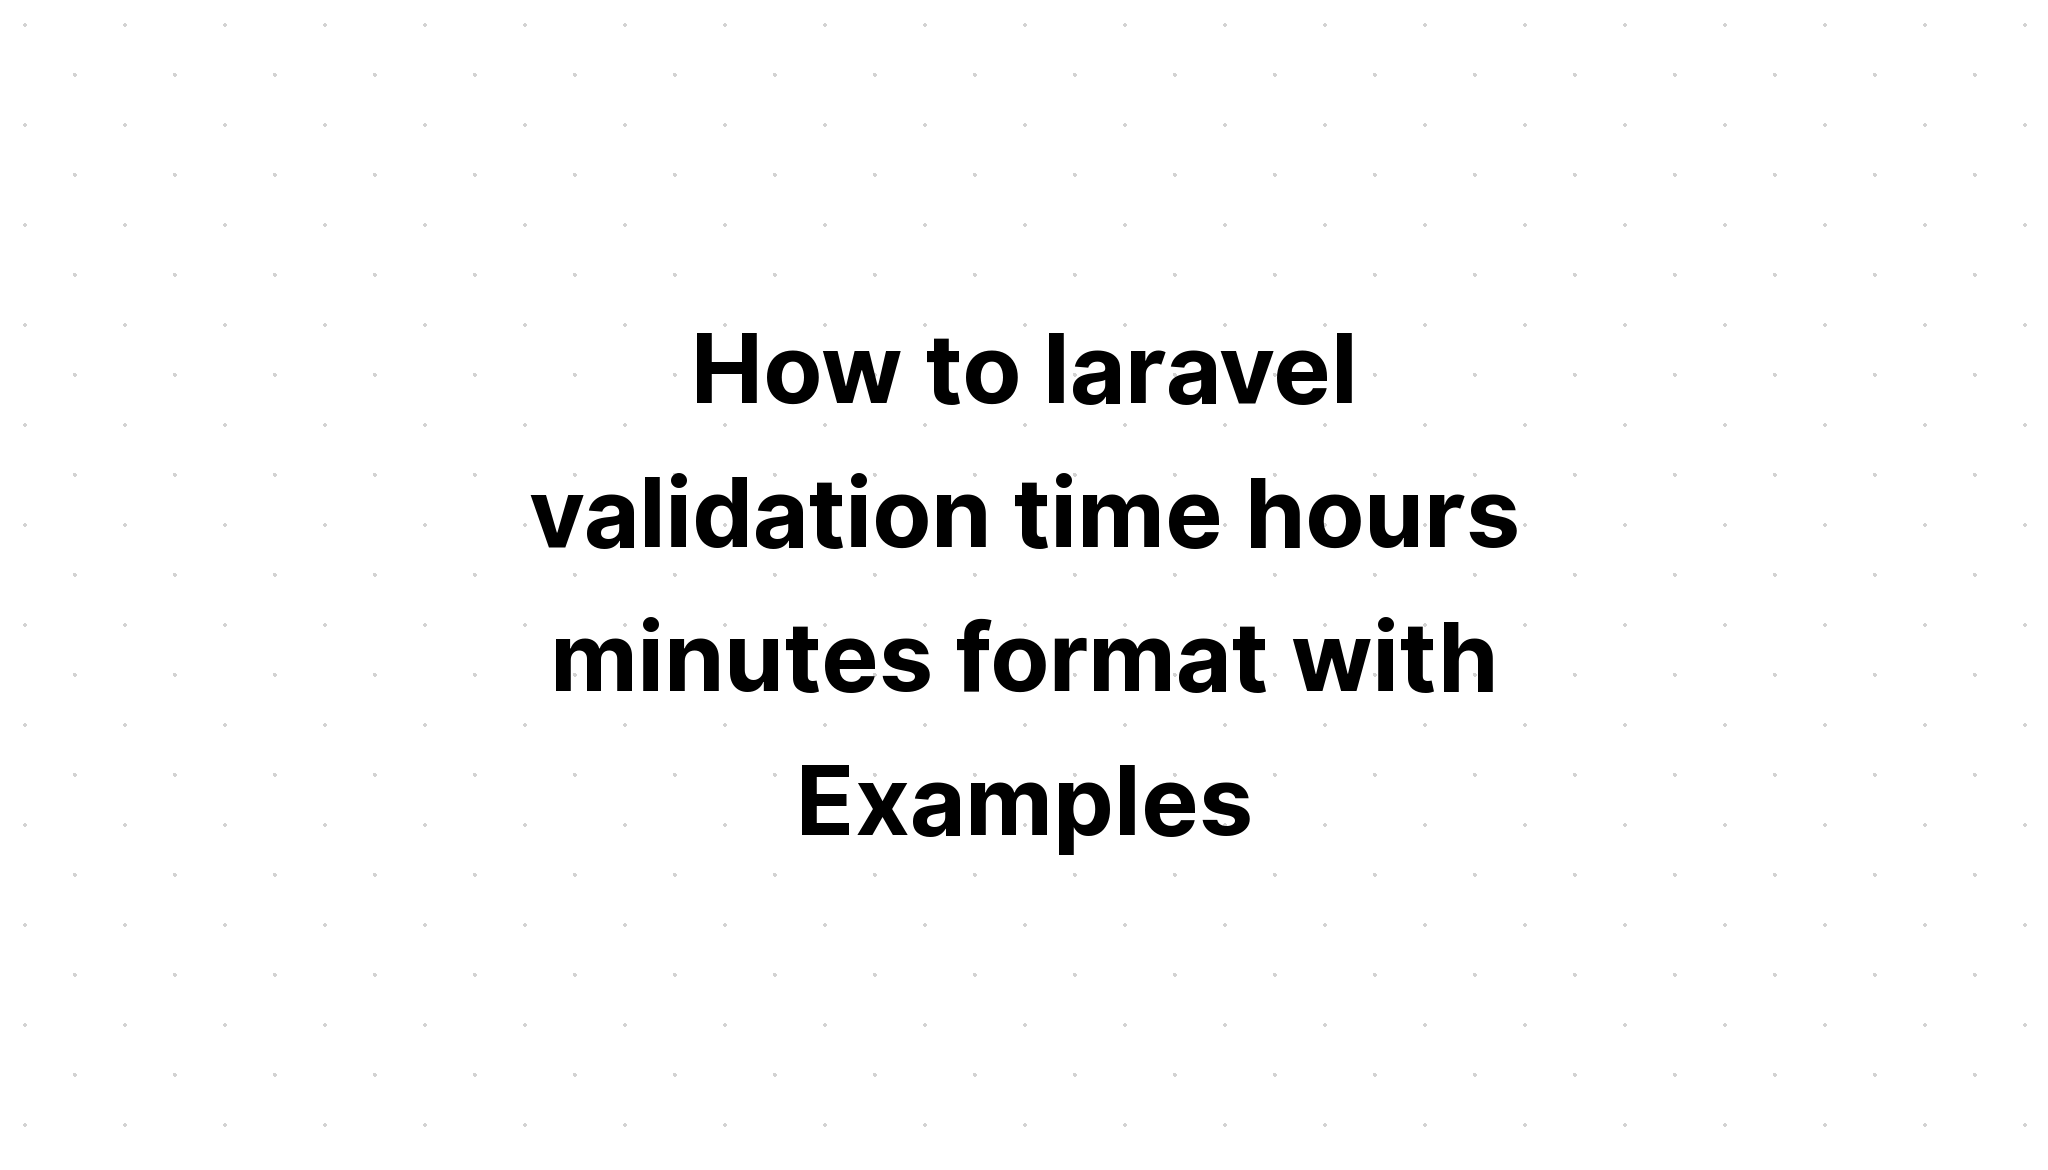 Cara laravel validasi format waktu jam menit dengan Contoh